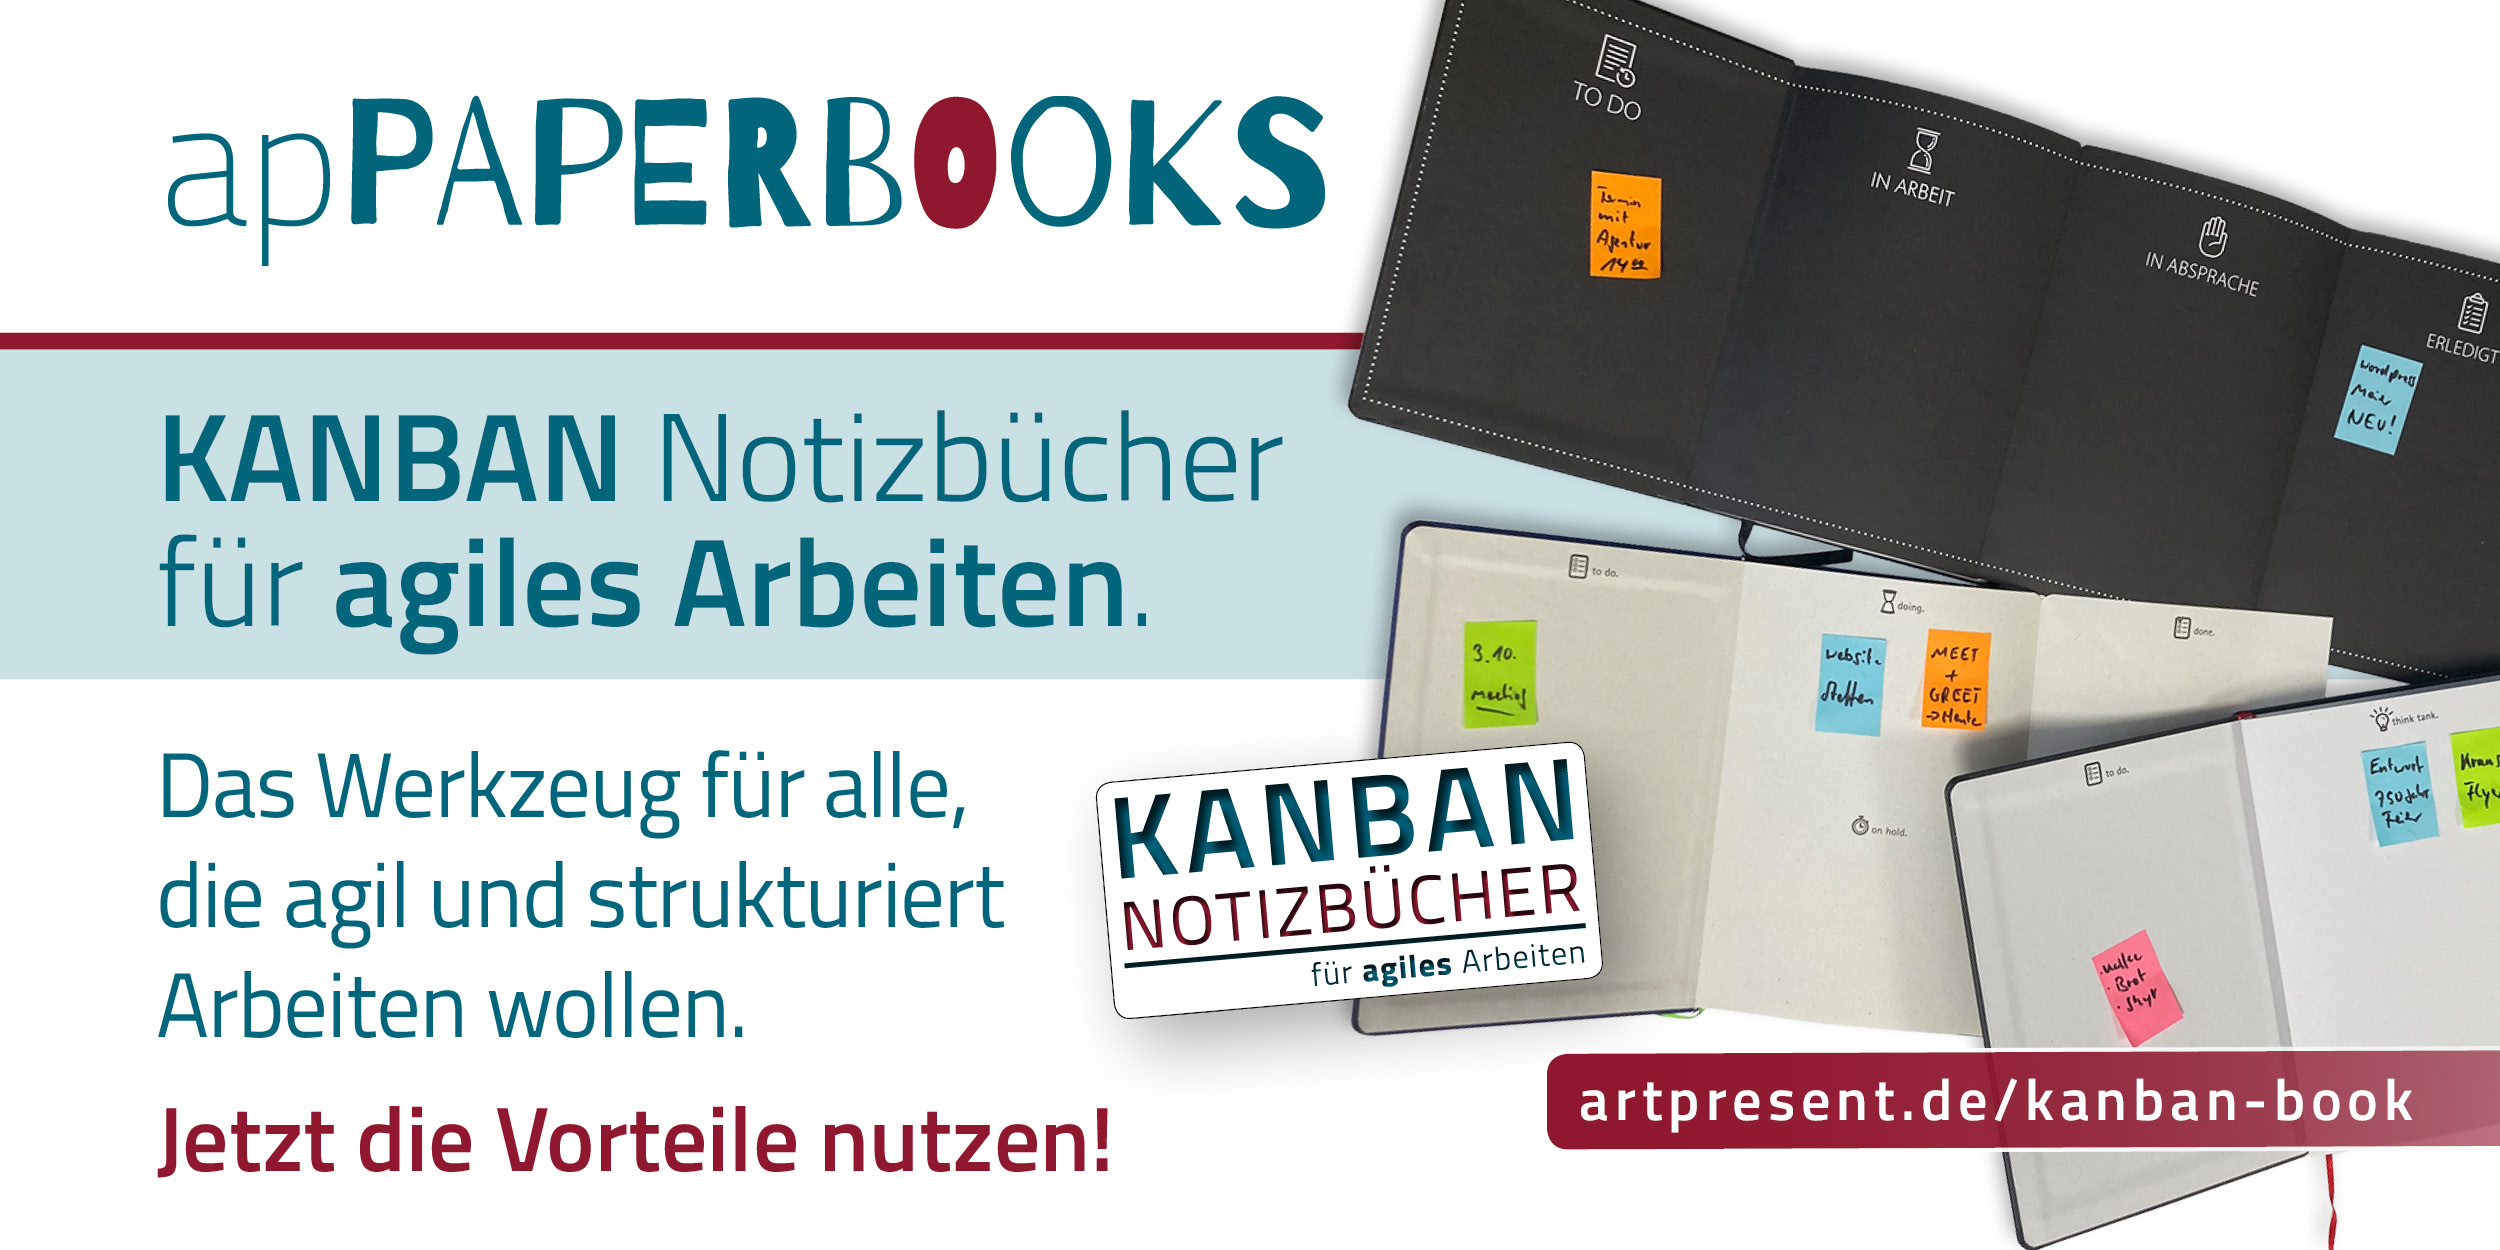 Featured image for “KANBAN Notizbücher”